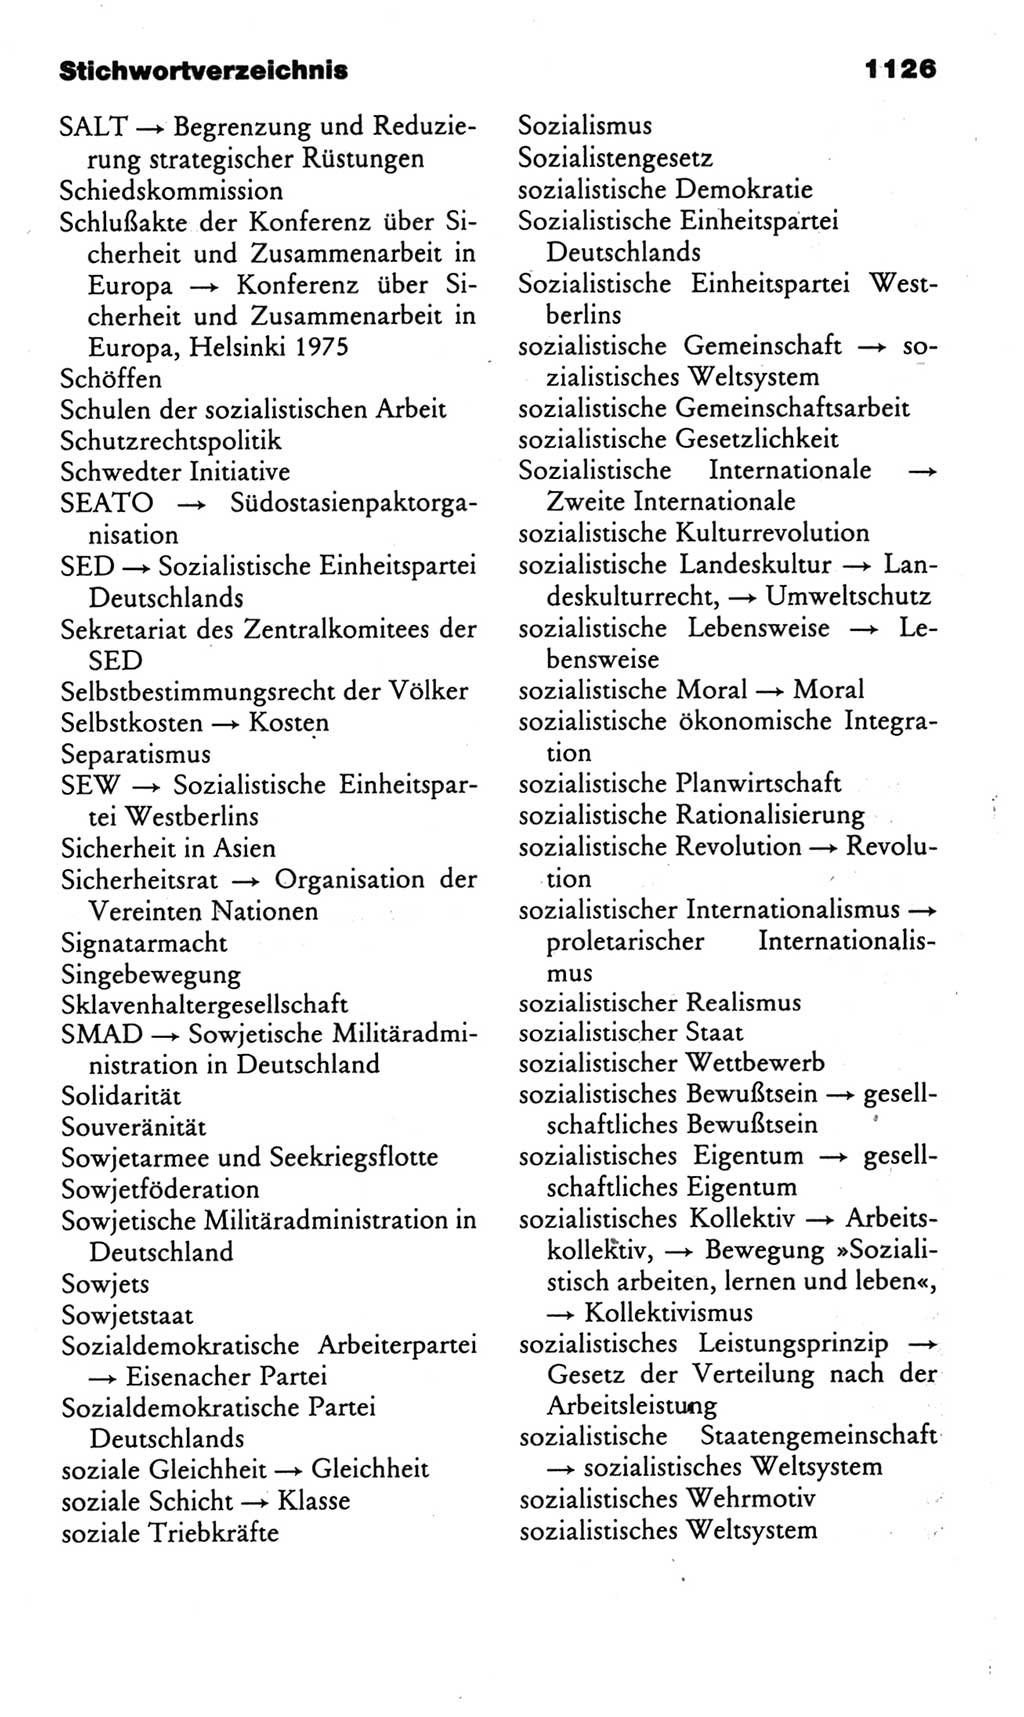 Kleines politisches Wörterbuch [Deutsche Demokratische Republik (DDR)] 1985, Seite 1126 (Kl. pol. Wb. DDR 1985, S. 1126)